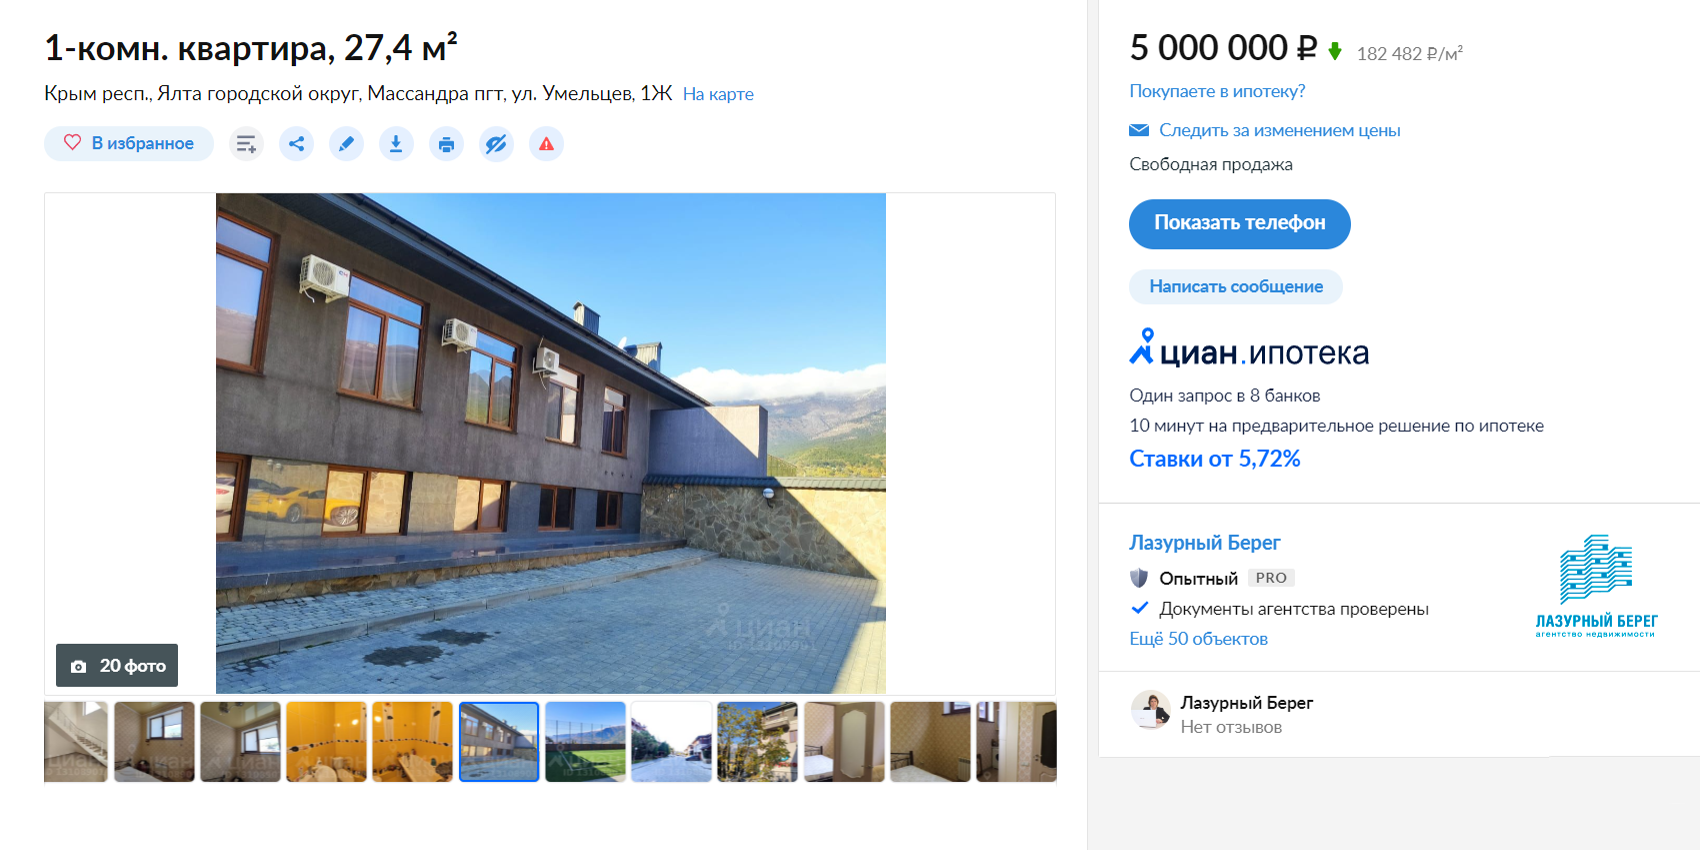 Однокомнатная квартира в новом ЖК «Долина гор» в Массандре — 5 млн рублей